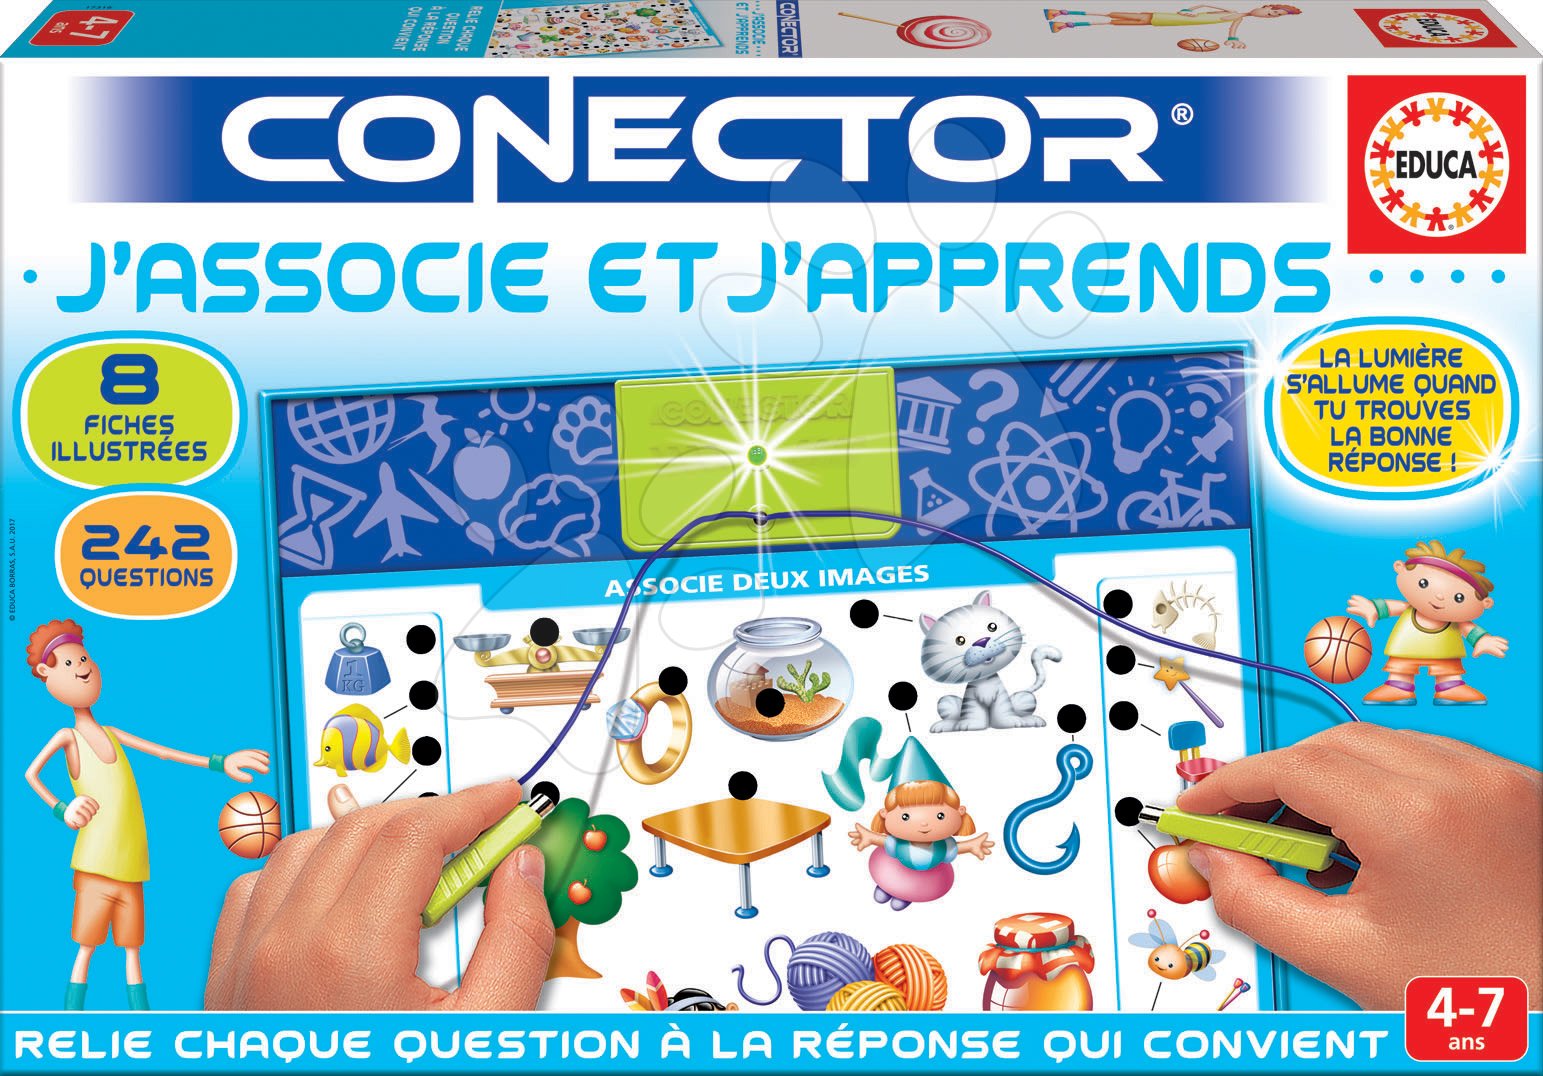 Oktatójáték Conector J'associe et J'apprends Educa francia 242 kérdés 4 - 7 éves korosztálynak